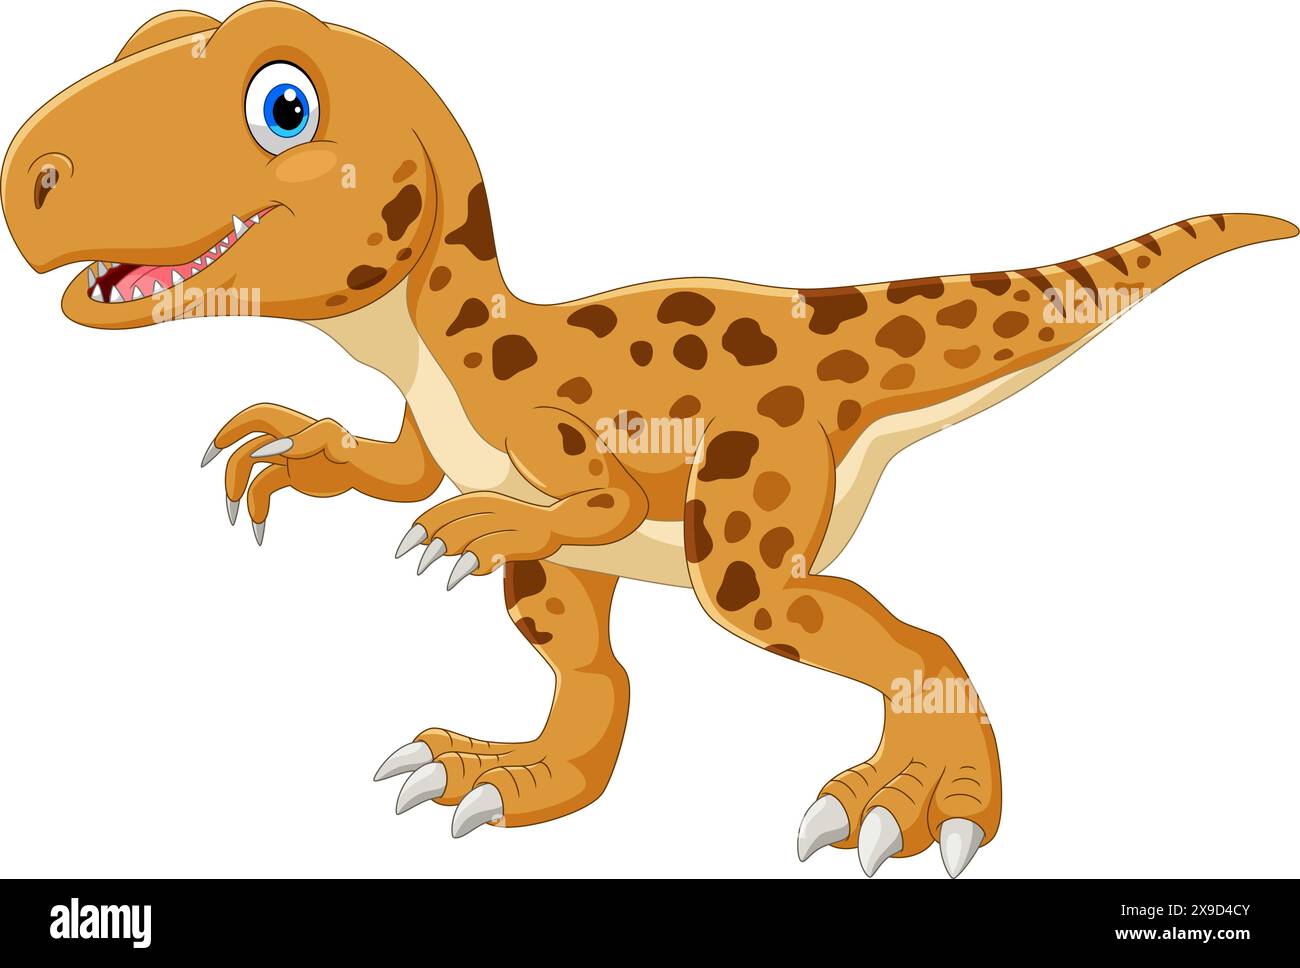 Tyrannosaurus Rex cartoon vector illustration on white background Stock Vector